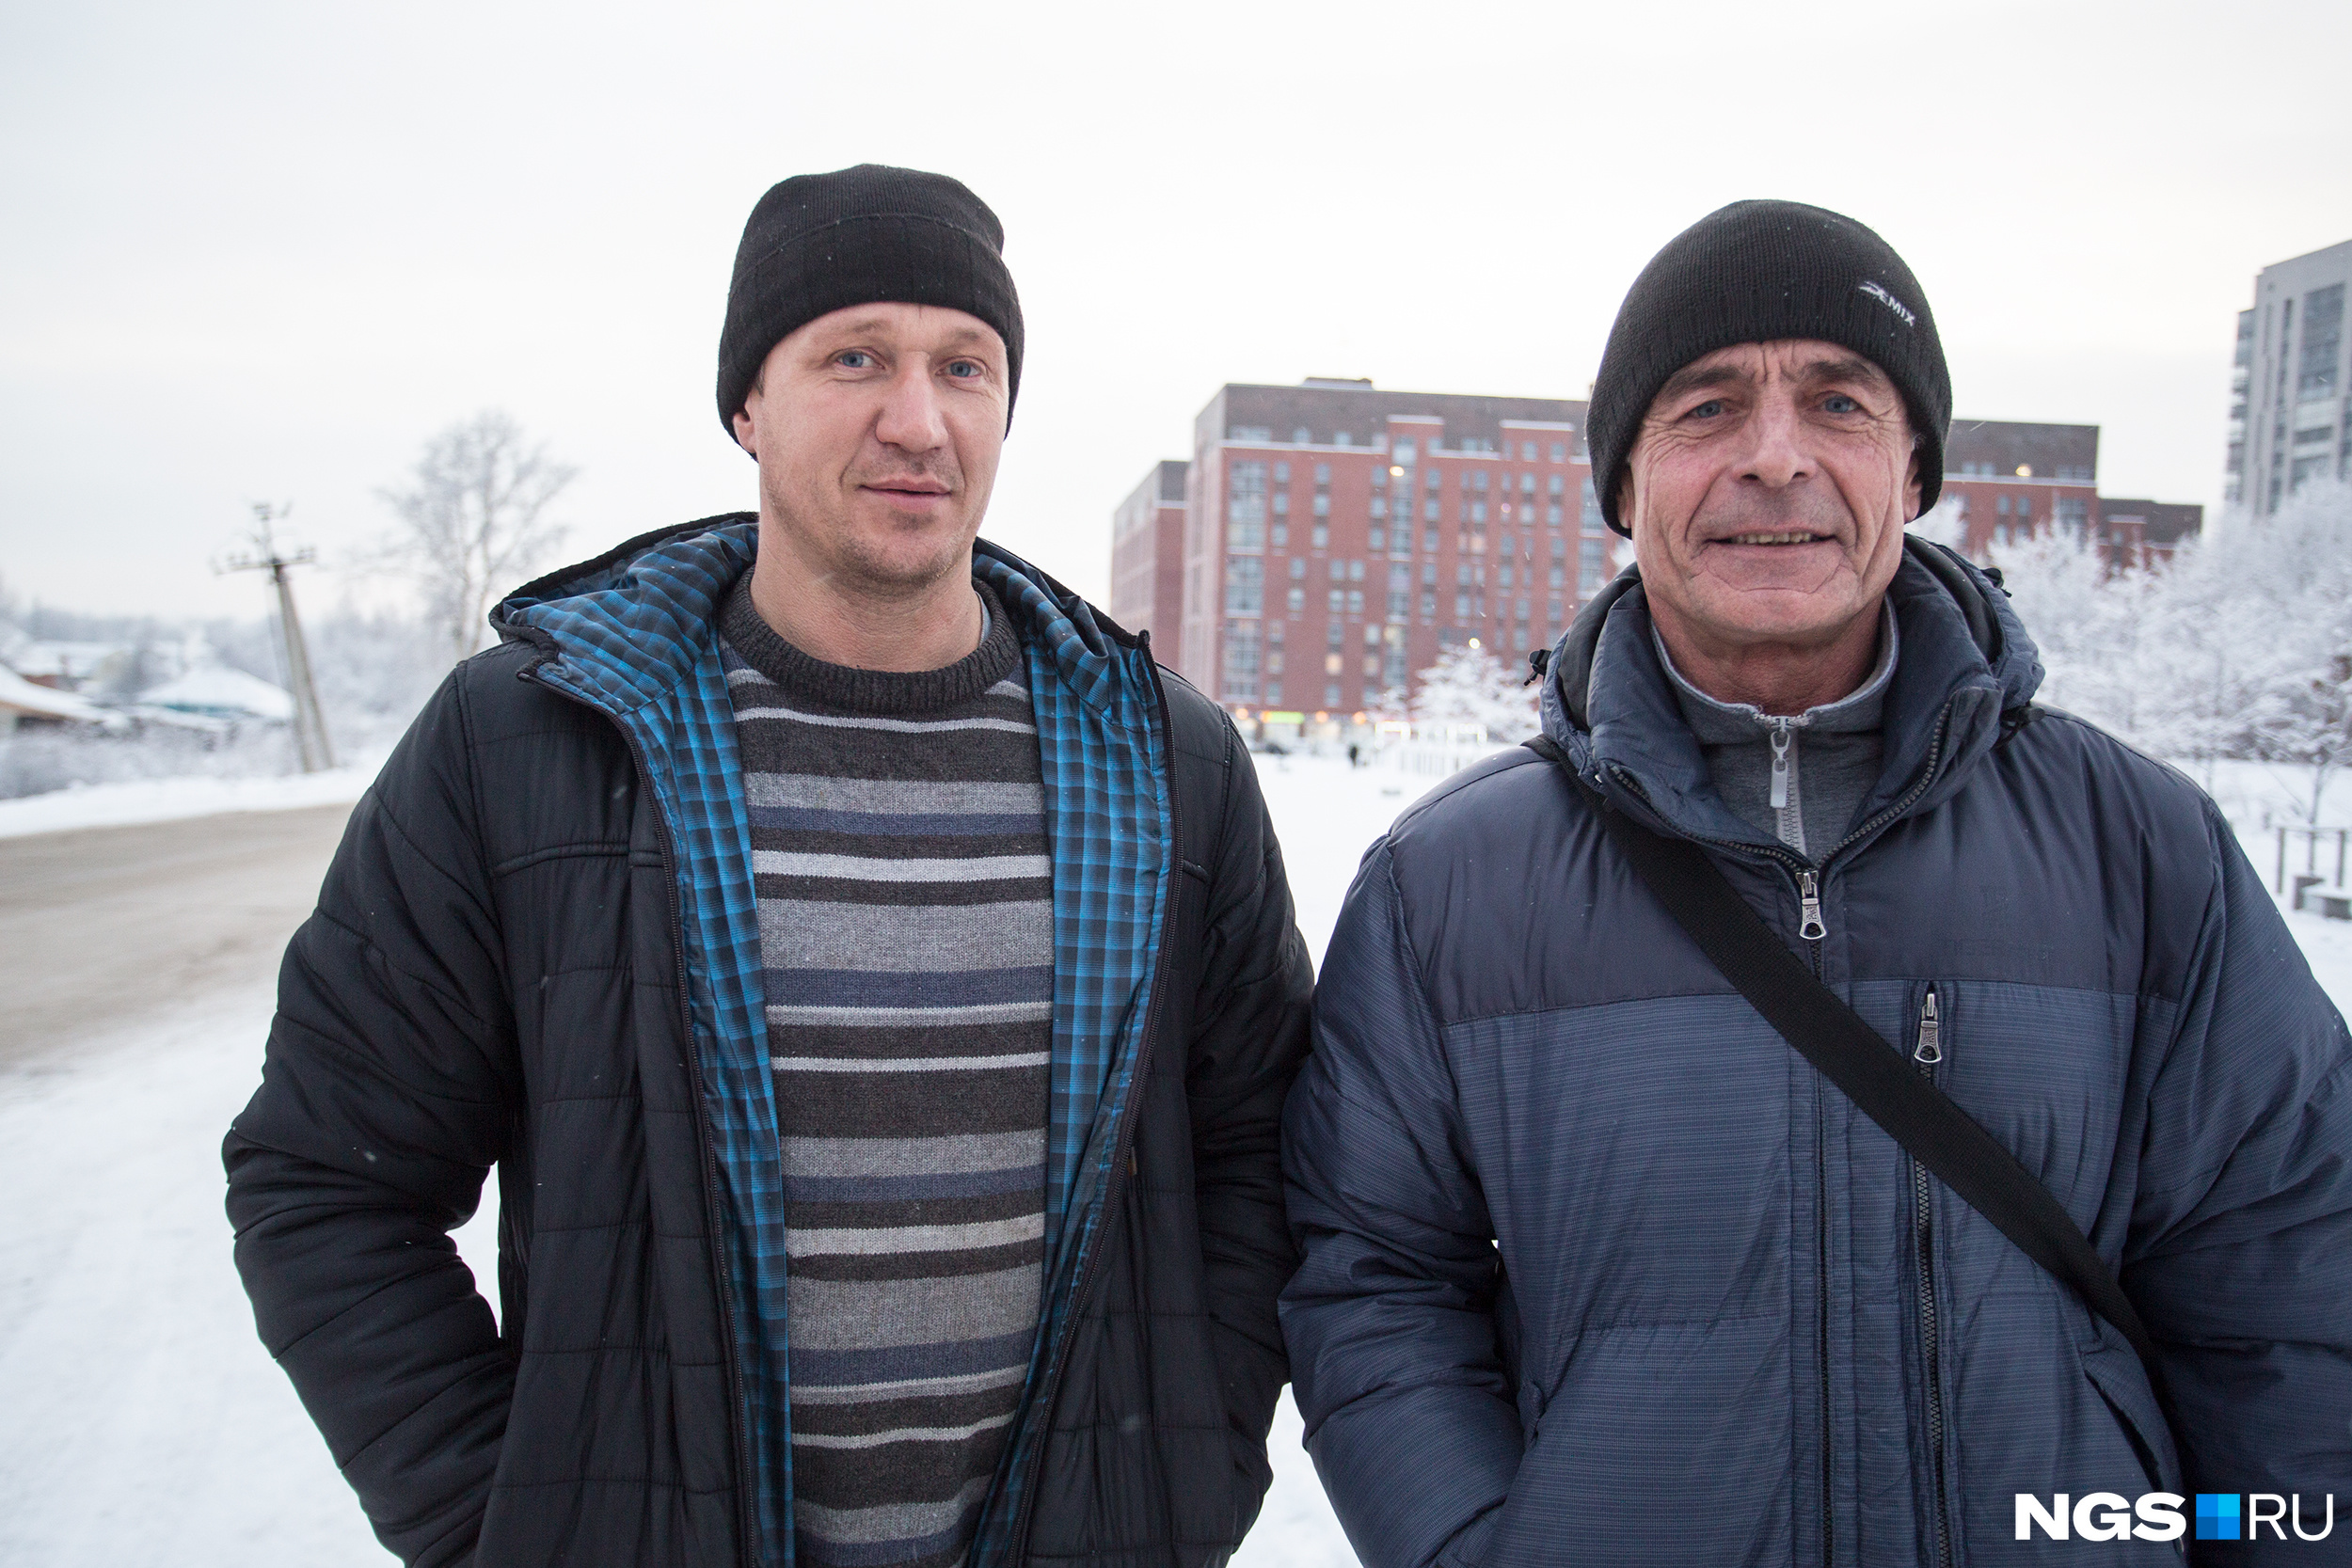 Михаил Молоствов (слева) и Виктор Чертков (справа) говорят, что не хотят никого видеть за решёткой, они ждут, когда с ними рассчитаются